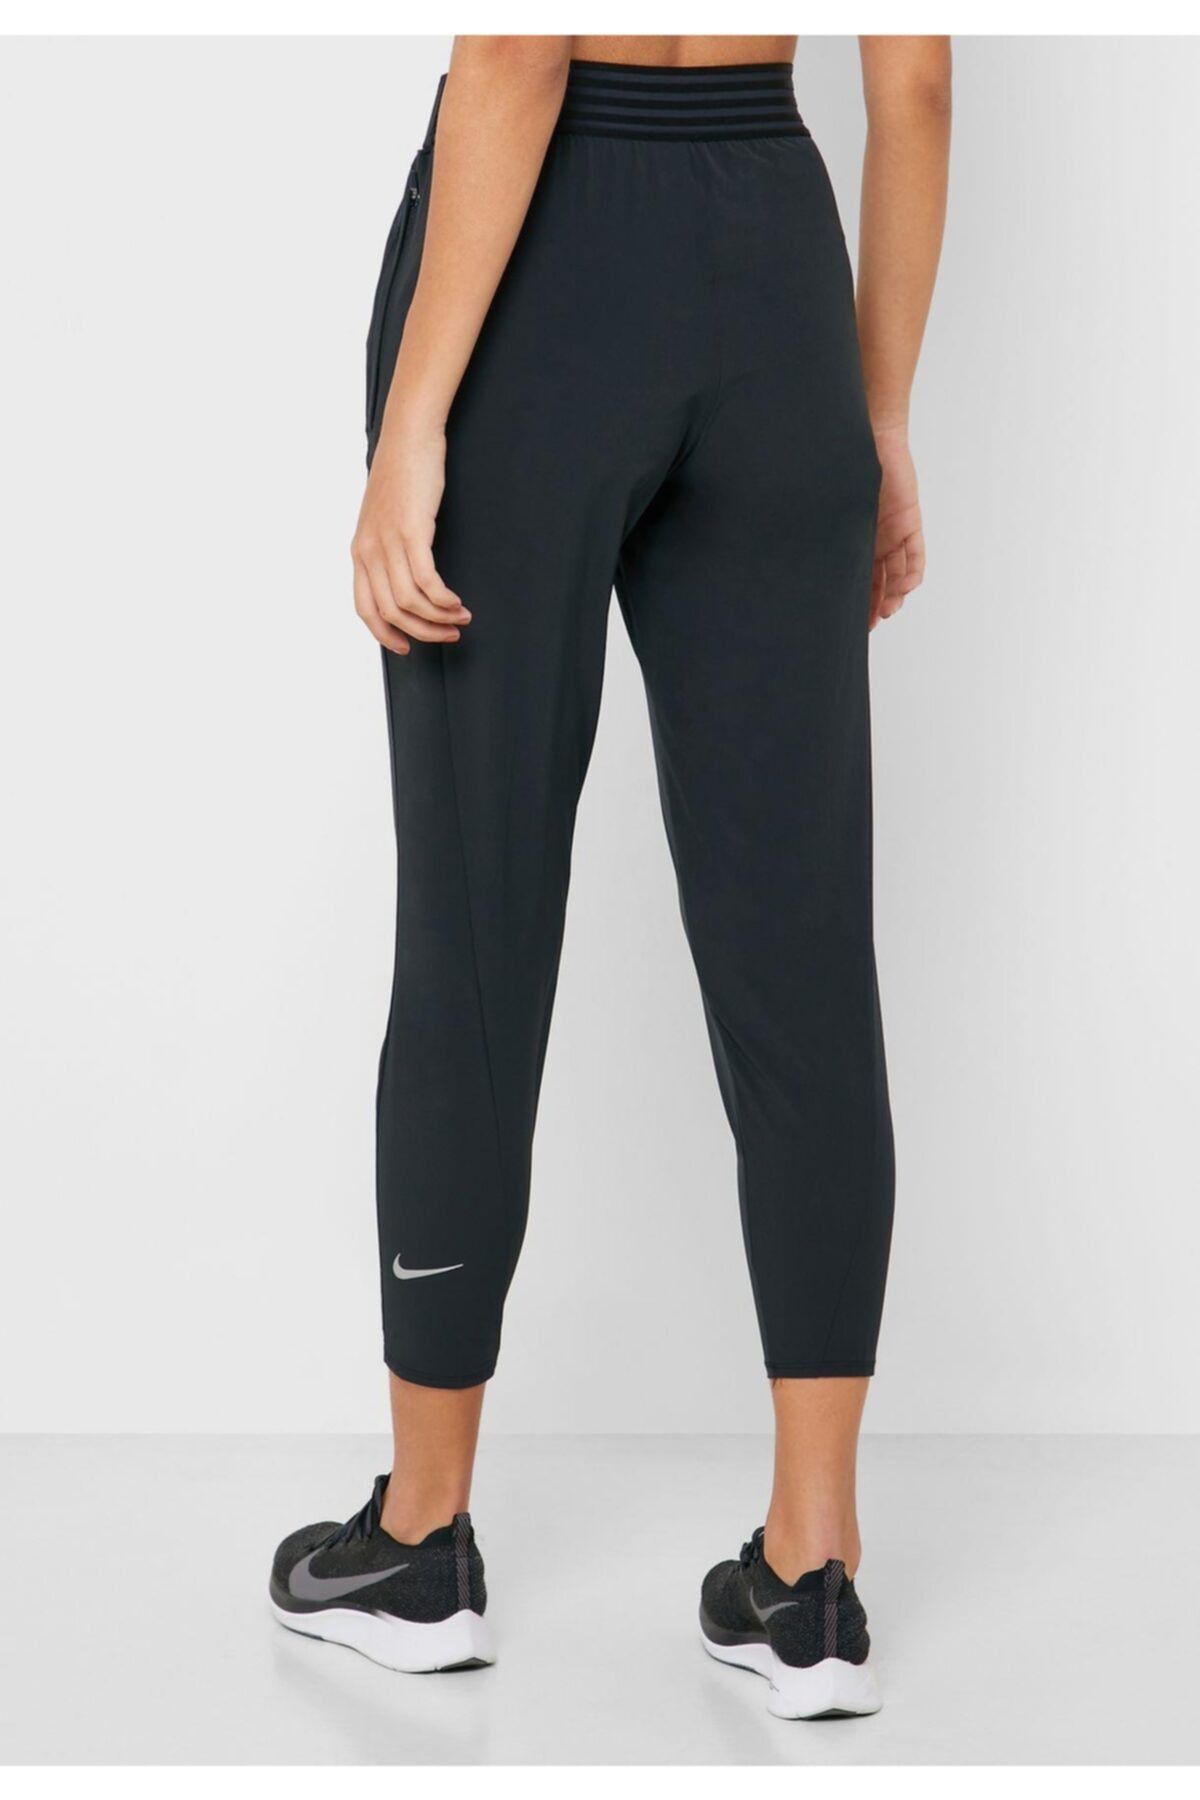 Nike Essential Women's Pants 7/8 Kadın Koşu Yürüyüş Pantolunu